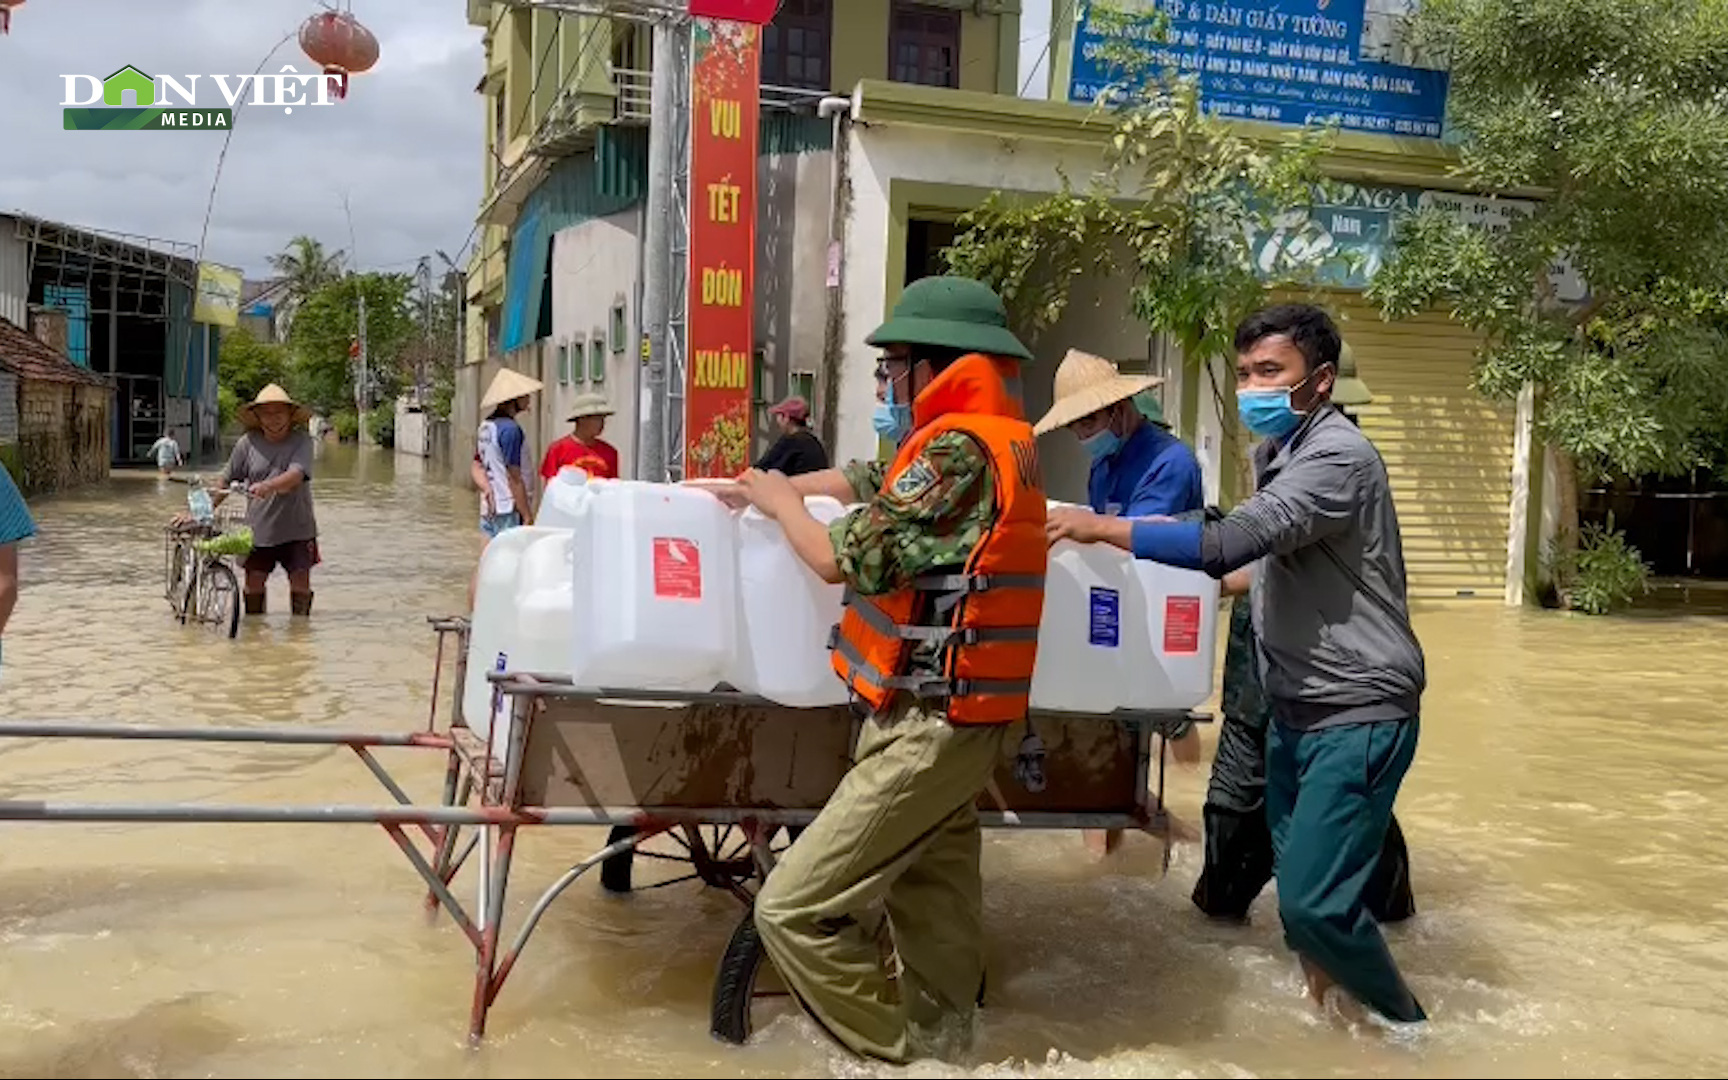 Xuyên trưa tiếp tế cho người dân trong vùng ngập lụt tại Quỳnh Lưu